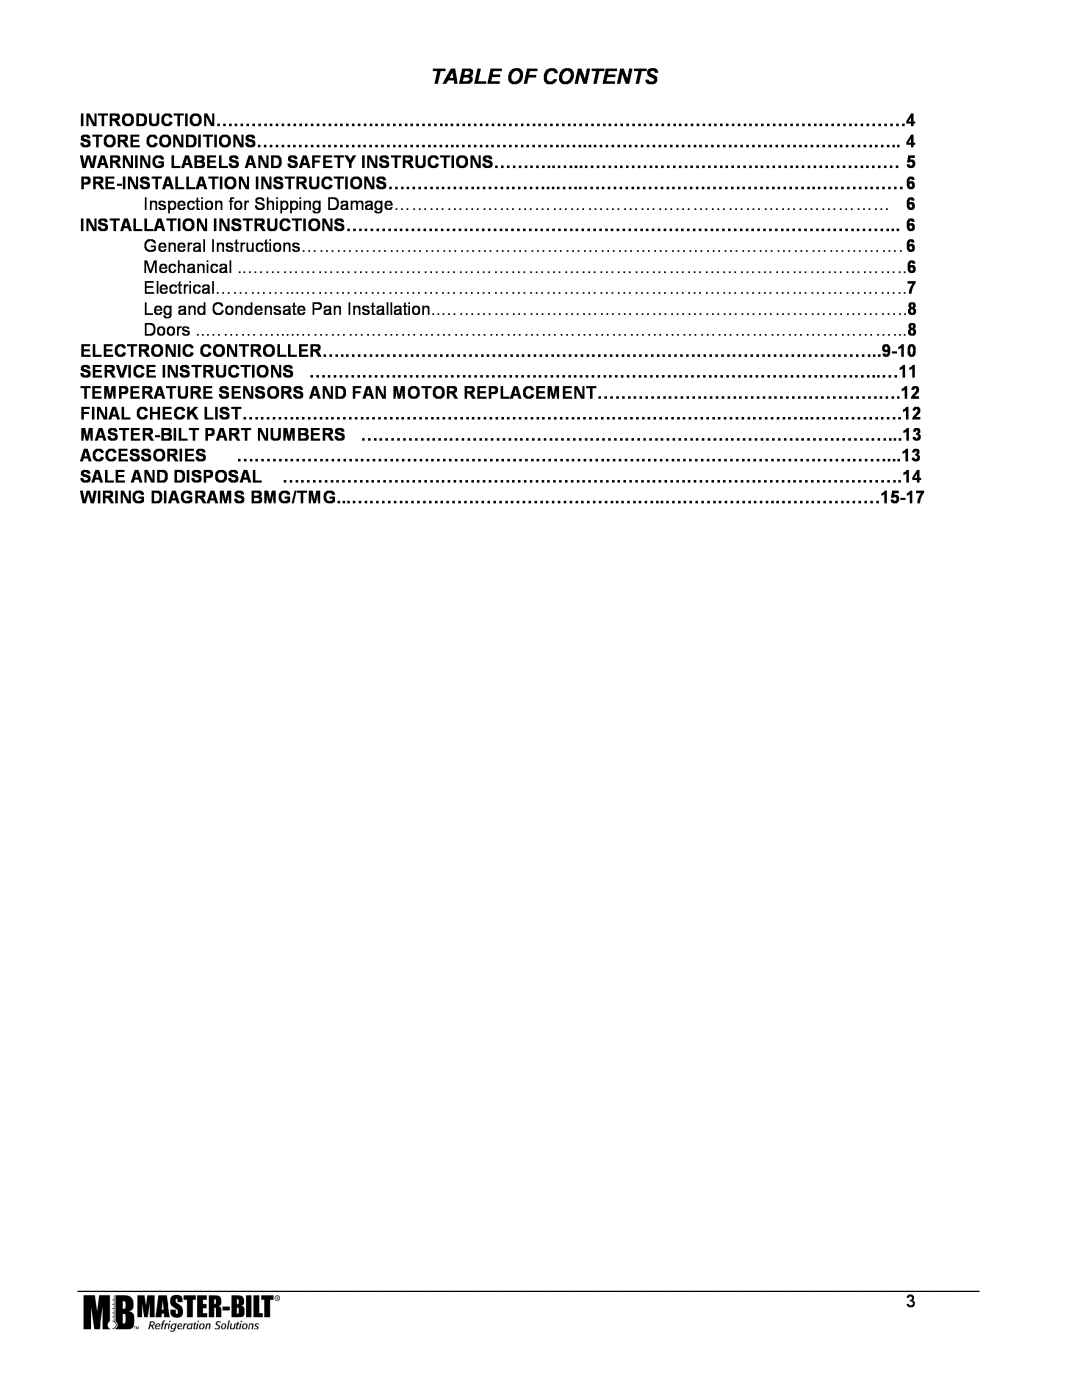 Master Bilt 74, BMG/TMG 27, 80, 48, 52 manual Table Of Contents 